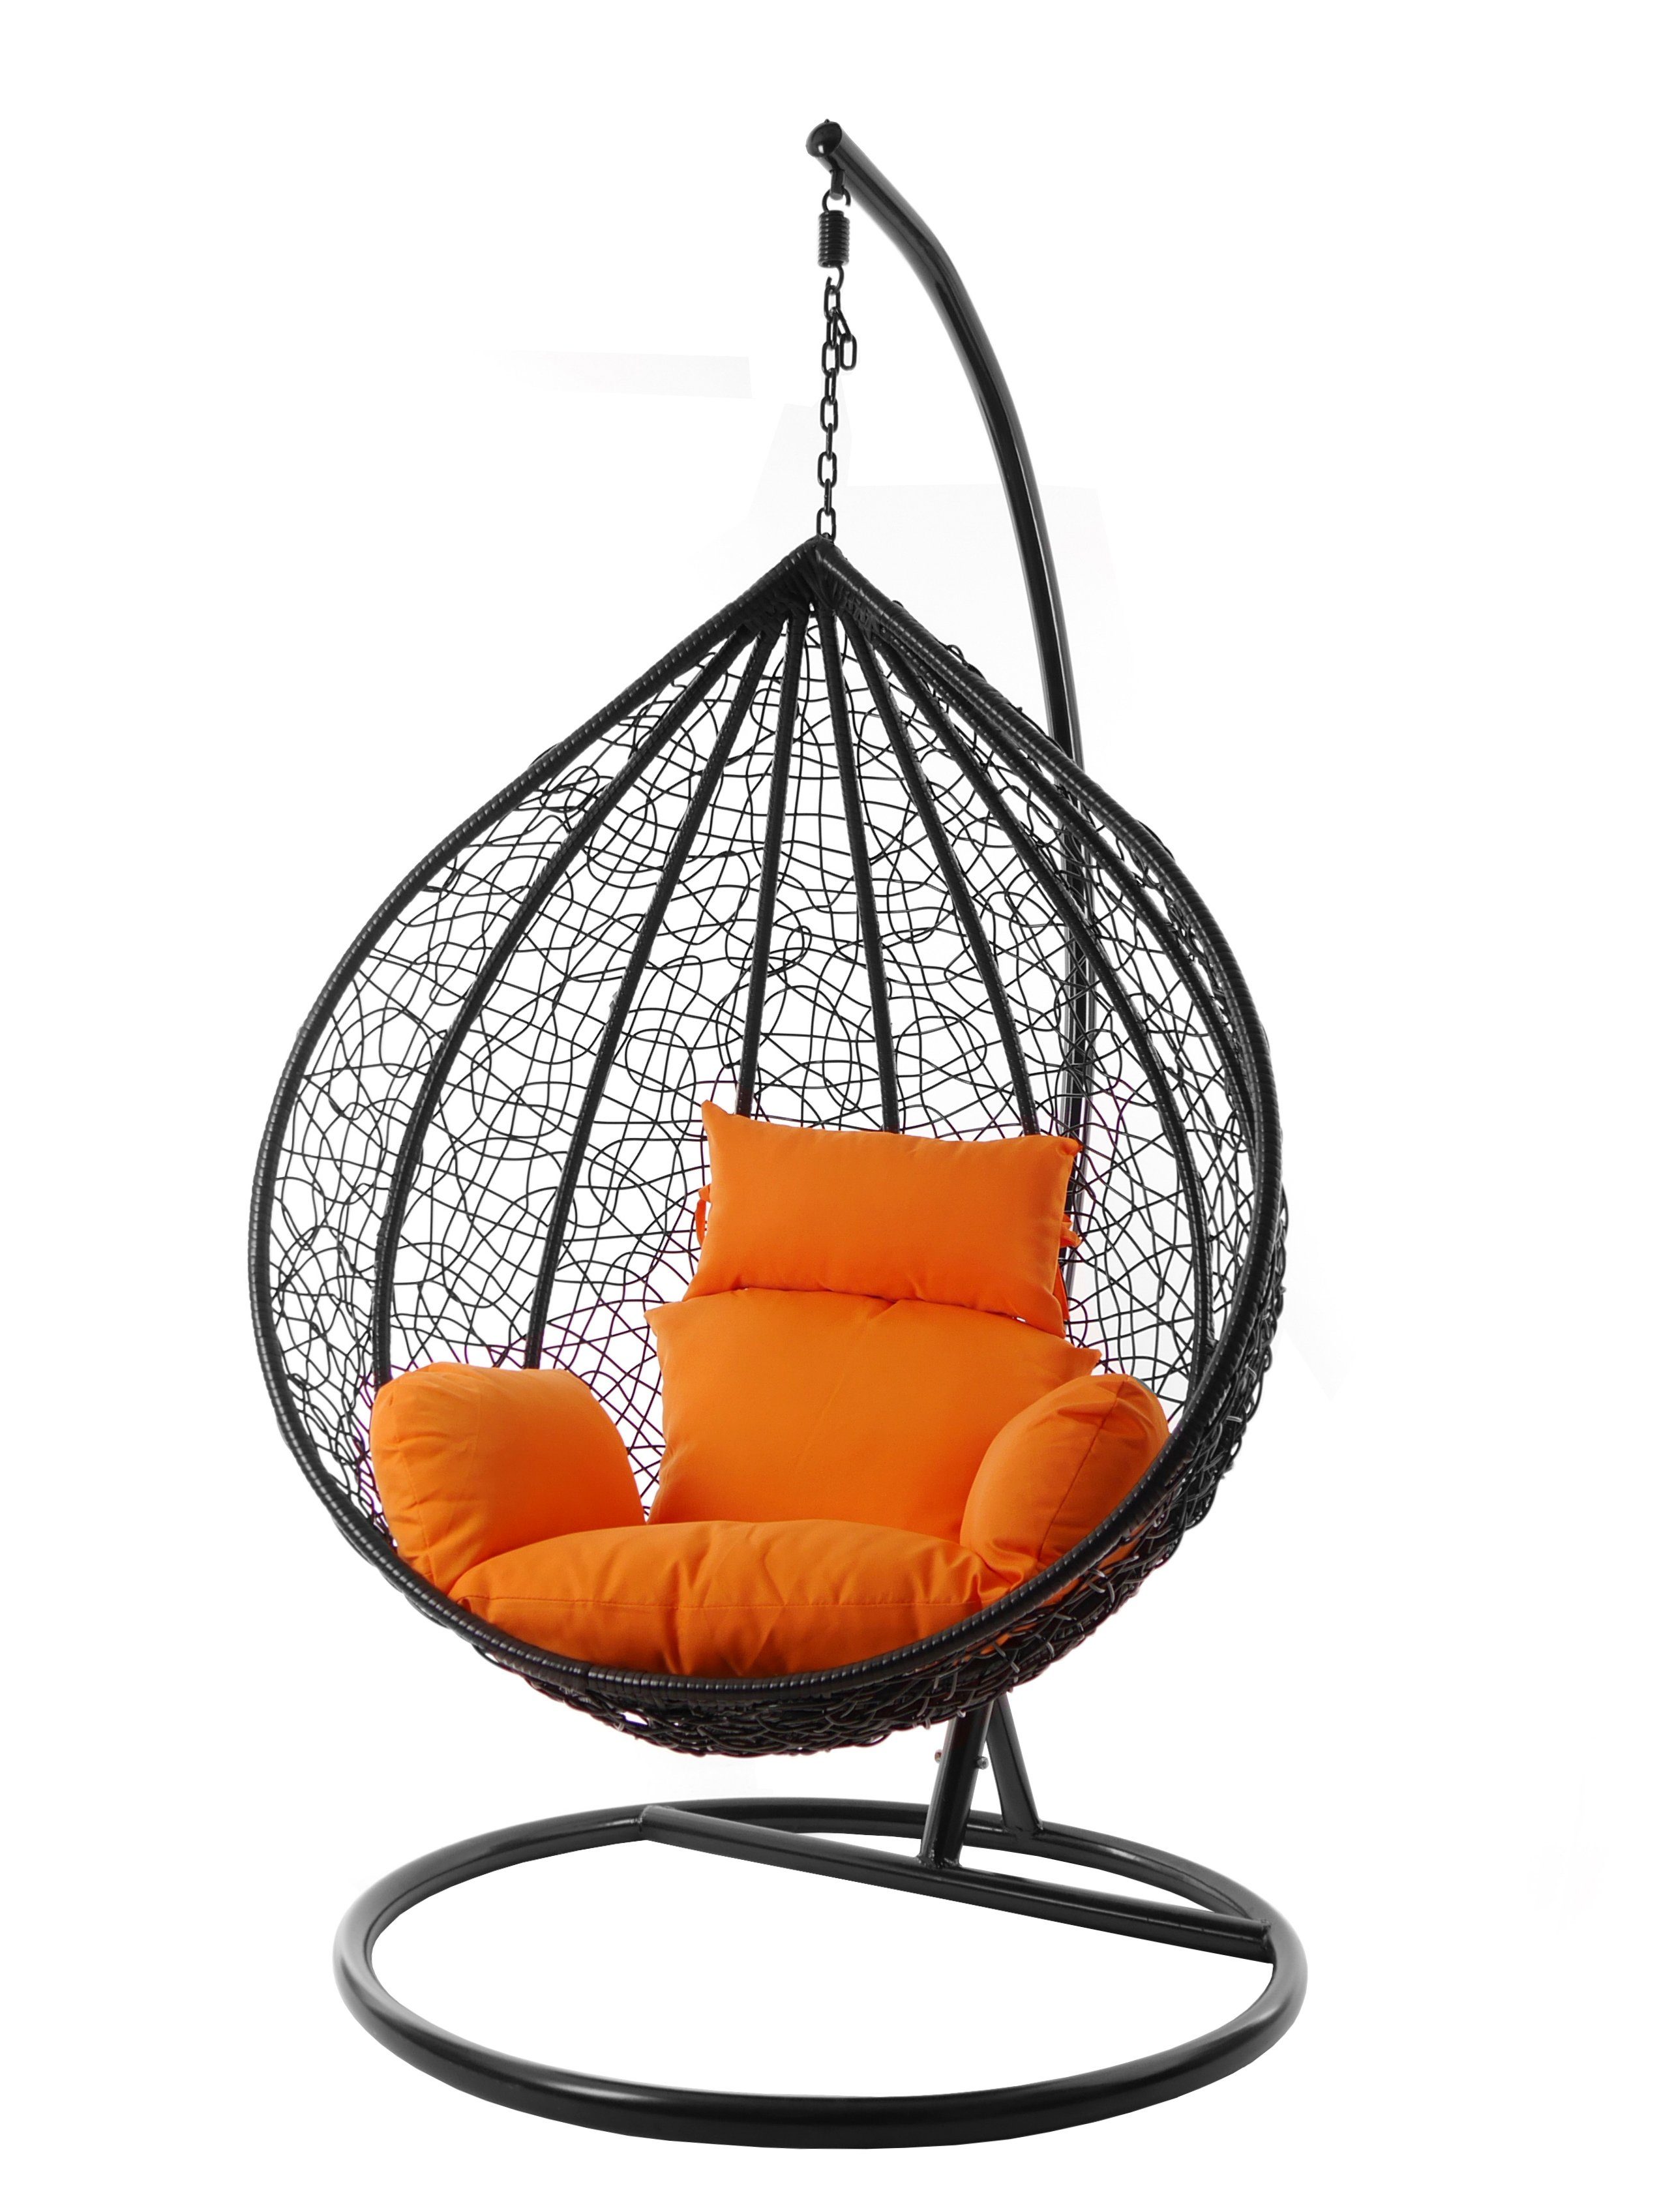 XXL MANACOR (3030 Farben orange verschiedene Swing und schwarz, Chair, Kissen tangerine) Gestell edel, Nest-Kissen, inklusive, Hängesessel KIDEO Hängesessel